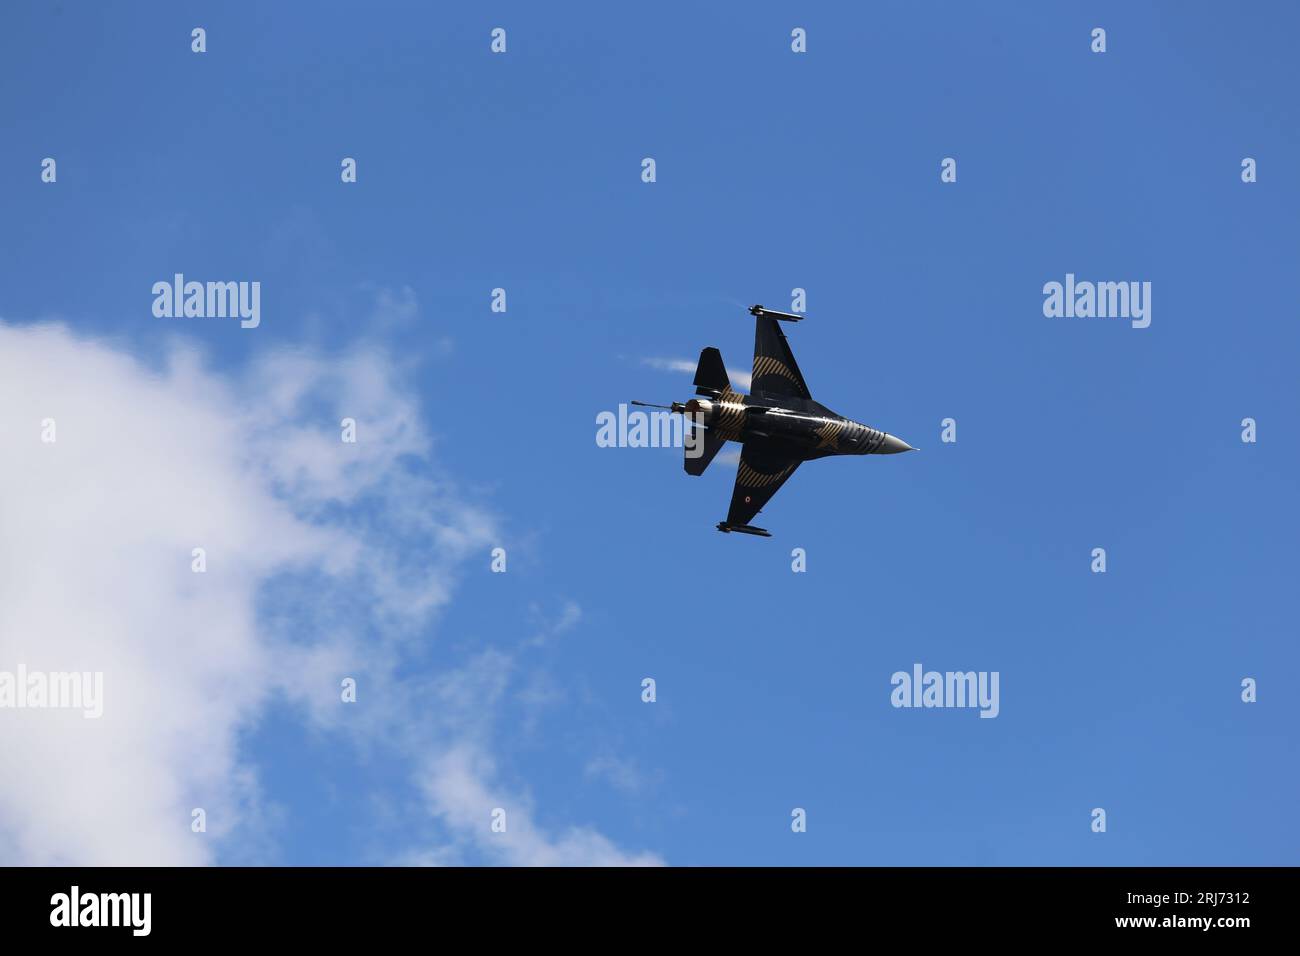 Aviones de combate en la nube. Aviones de combate en el espectáculo aéreo en el cielo azul. aviones et saliendo de la formación en el cielo. Avión de combate de la fuerza aérea en vuelo completo. Foto de stock